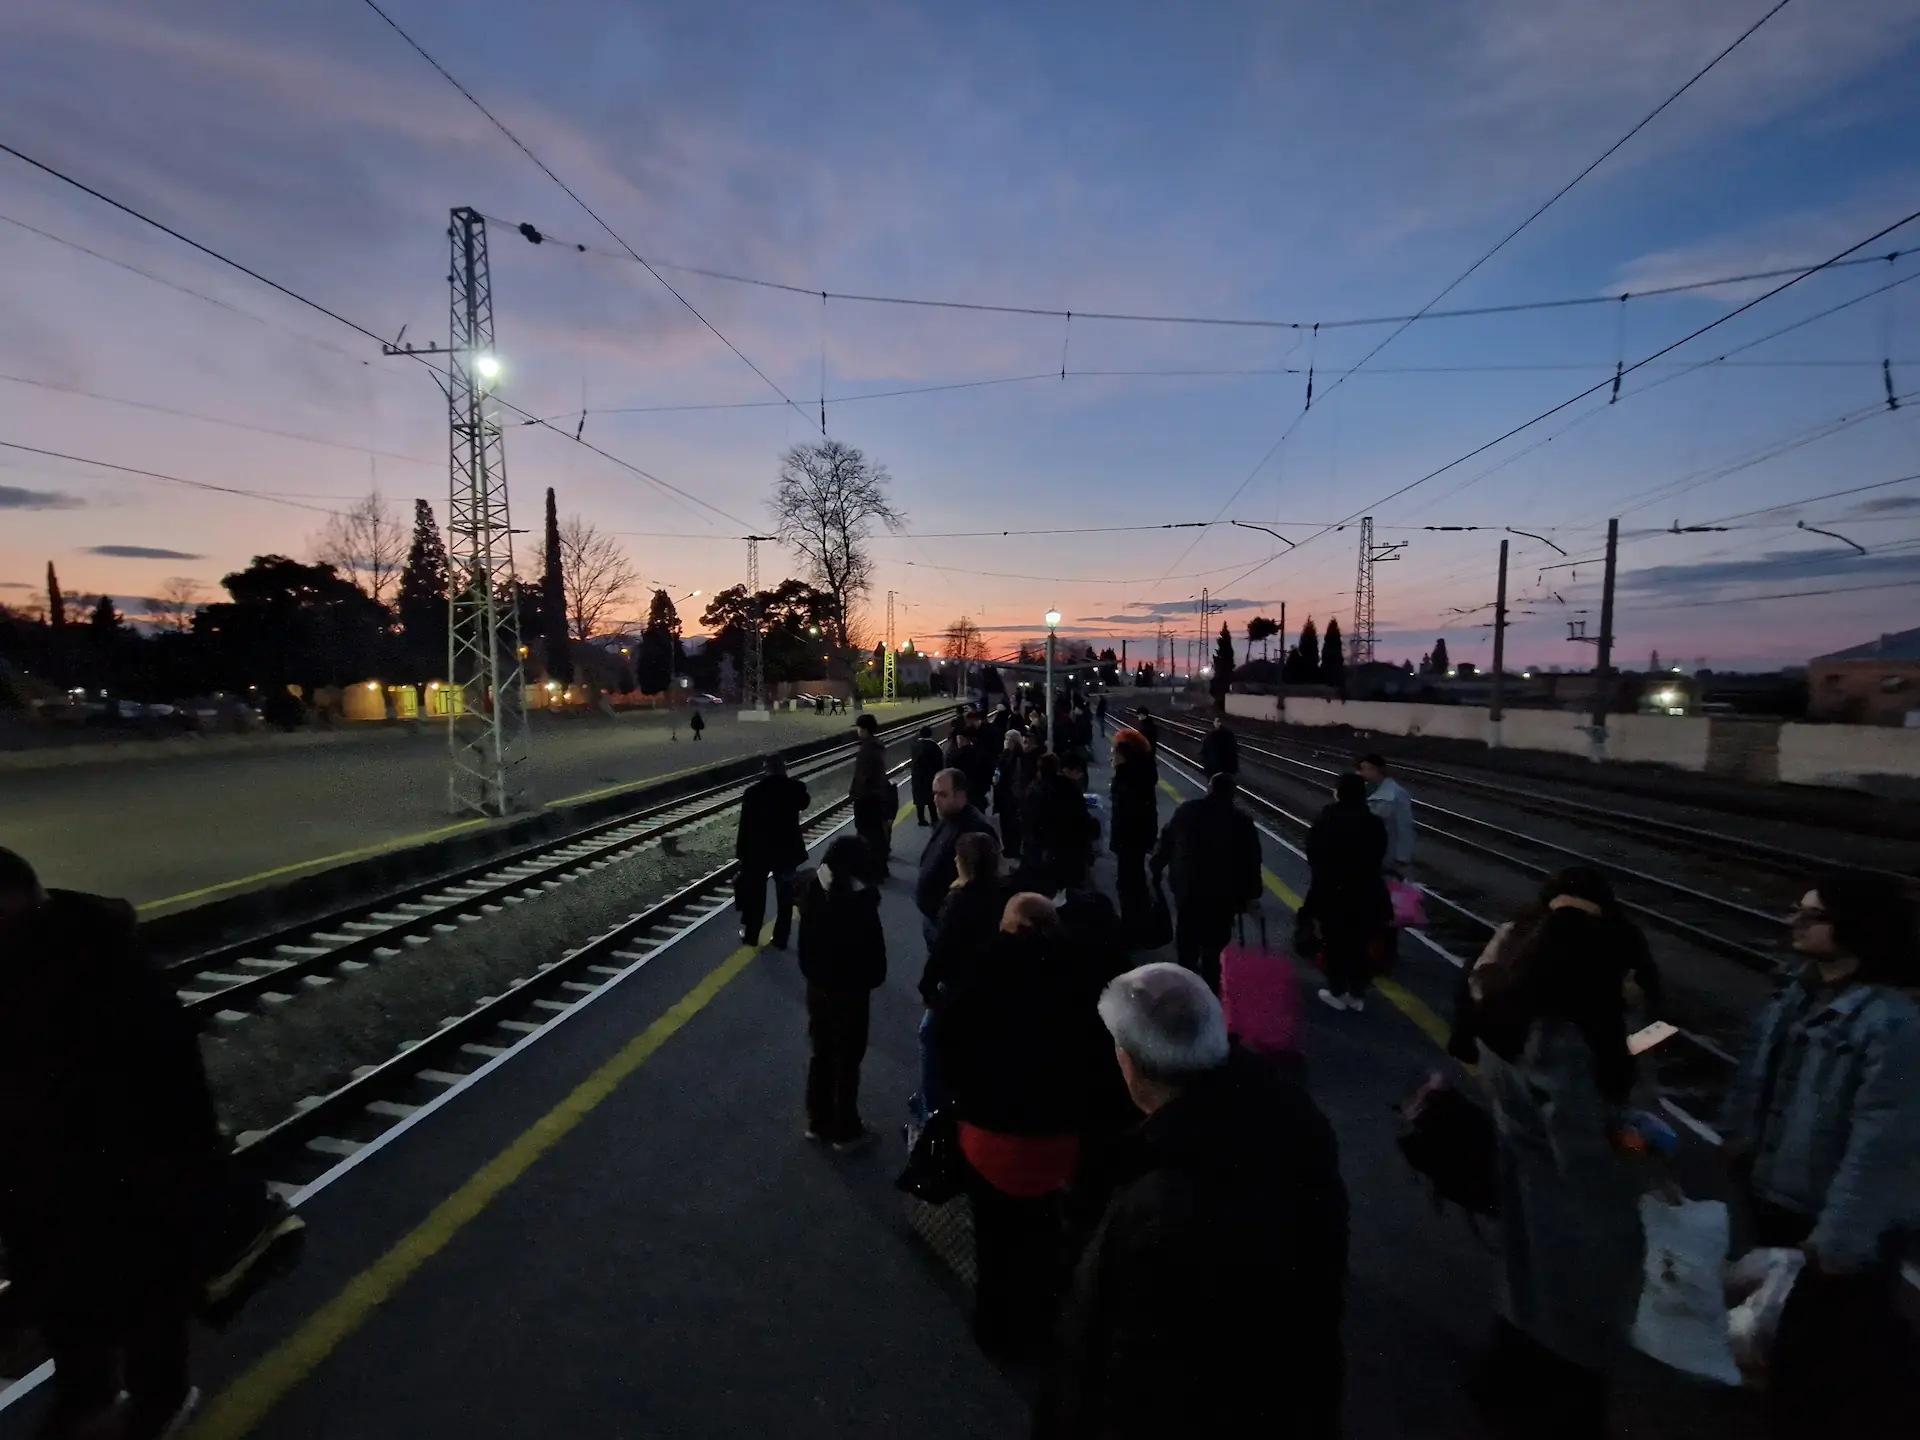 Le quai de la gare est rempli de monde. En fond, le soleil se couche sur Gandja.